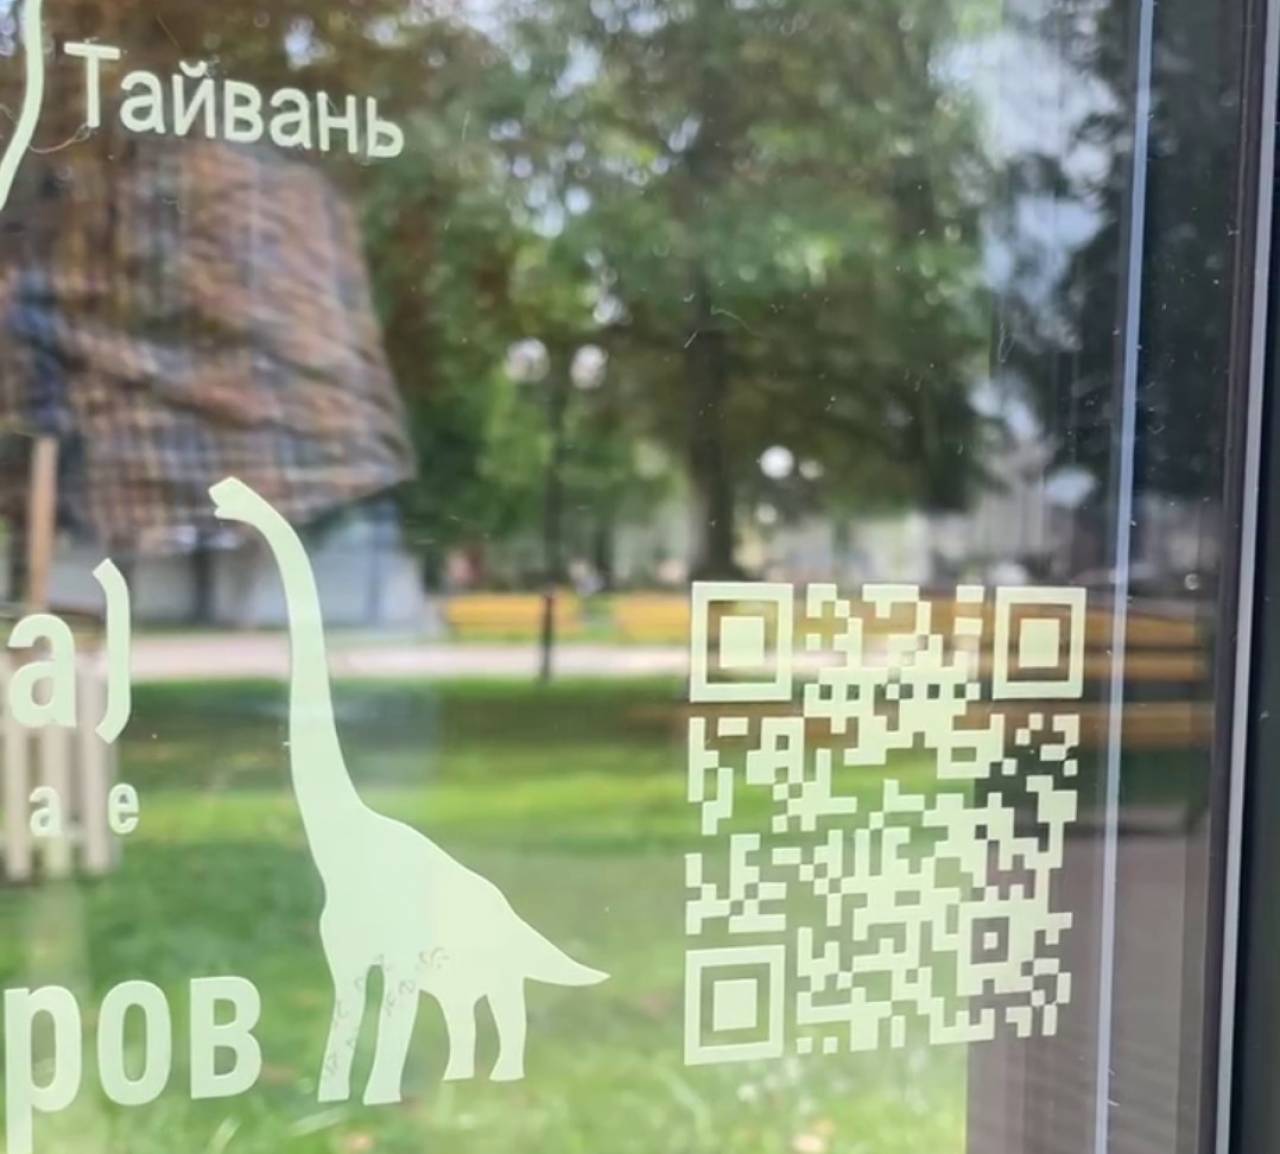 В парке Жилибера в Гродно появилась необычная информационная табличка рядом с уникальным реликтовым деревом